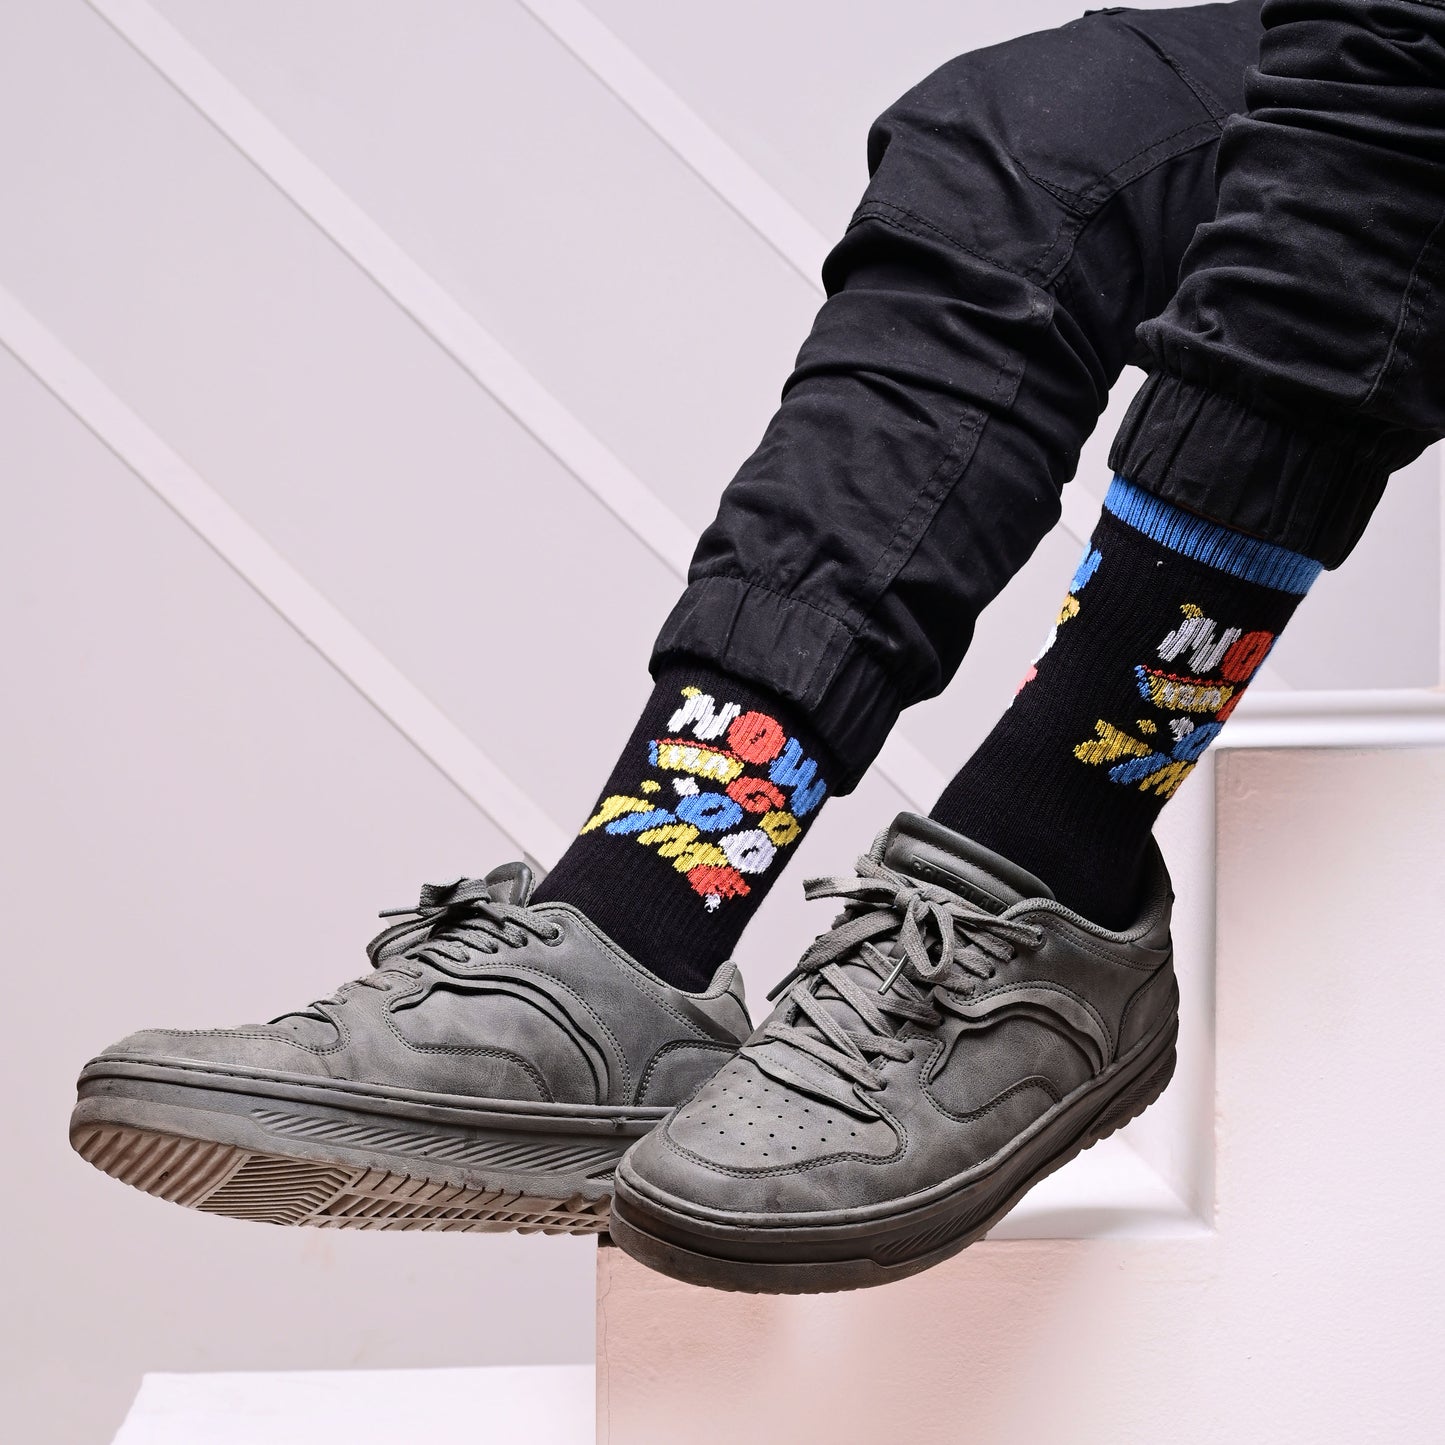 Good Times Sable - OG Sneaker Socks